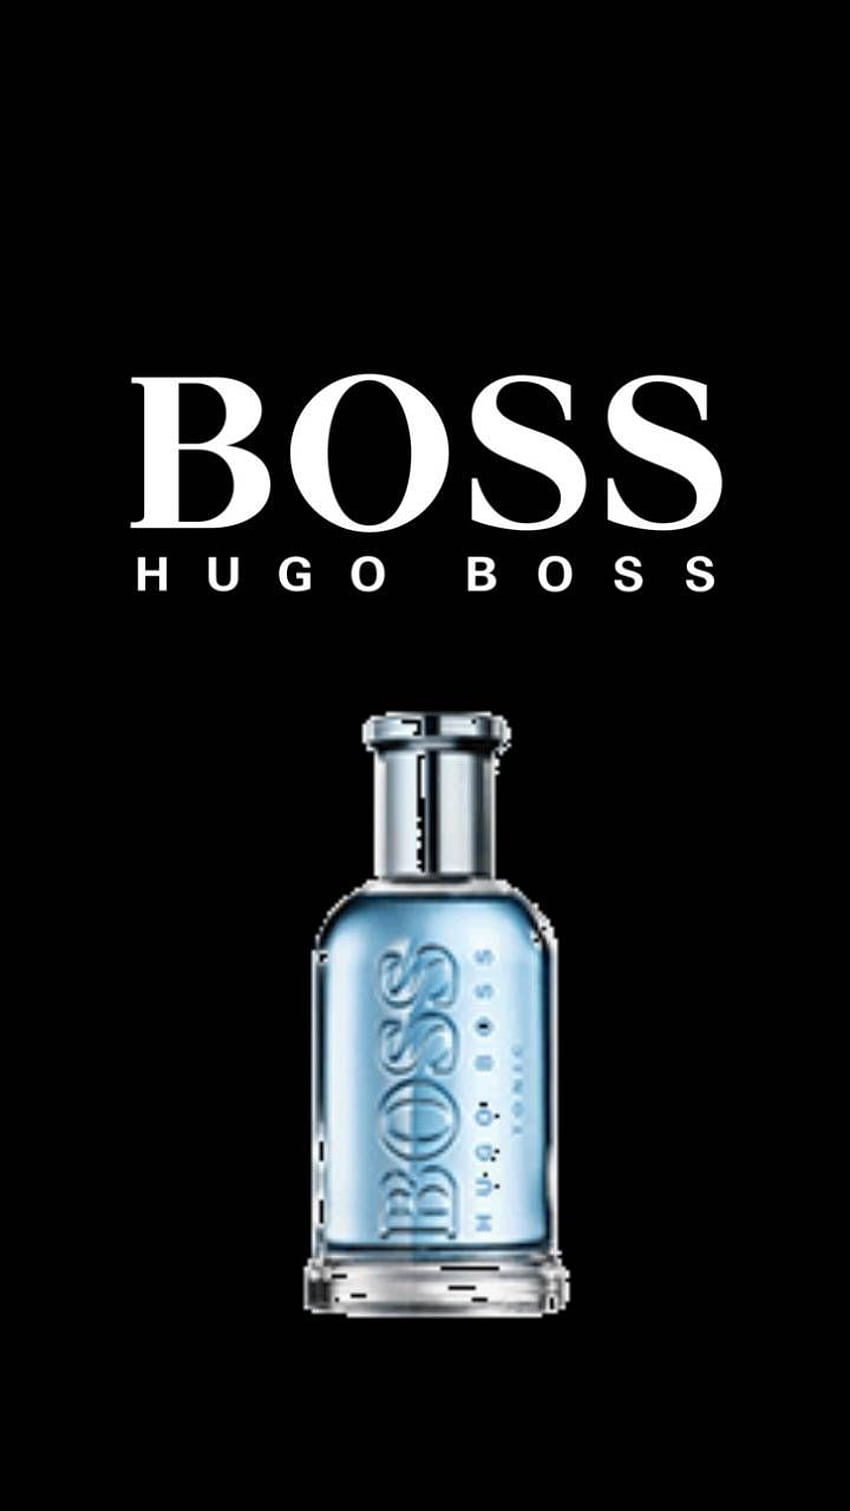 Hugo Boss fondo de pantalla del teléfono